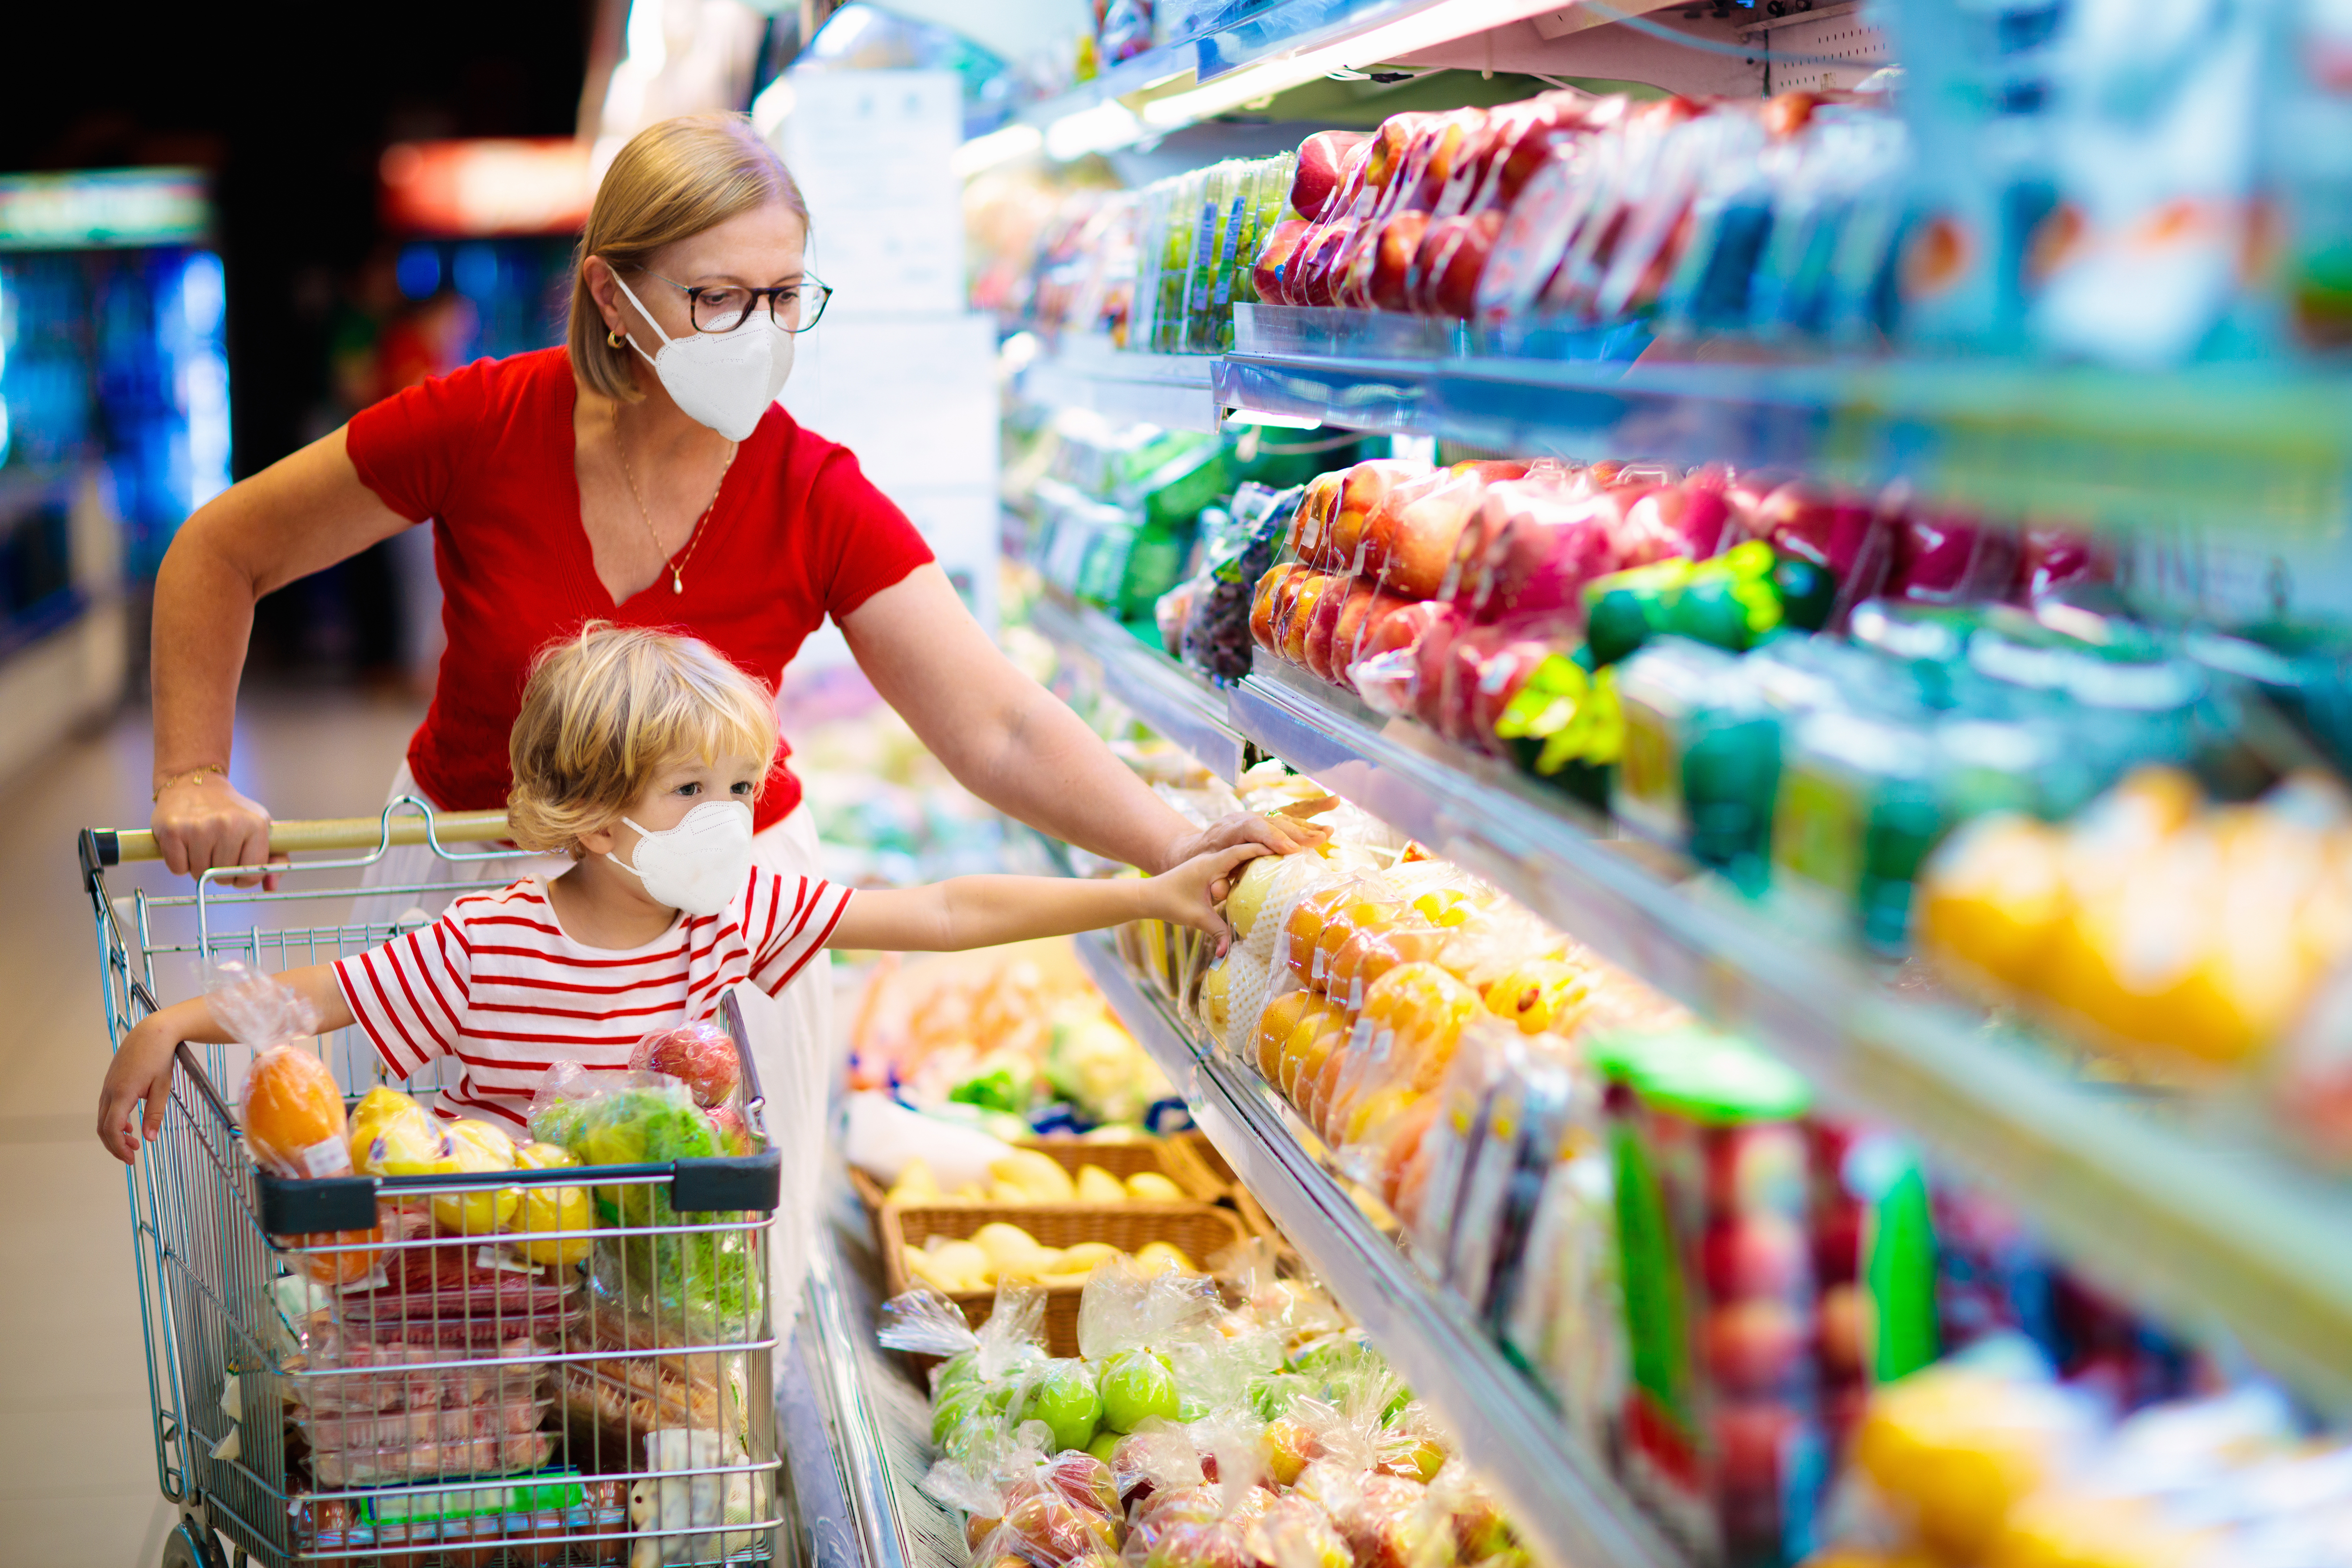 Mutter und Sohn tragen Gesichtsmasken beim Einkaufen in einem Supermarkt | Quelle: Shutterstock